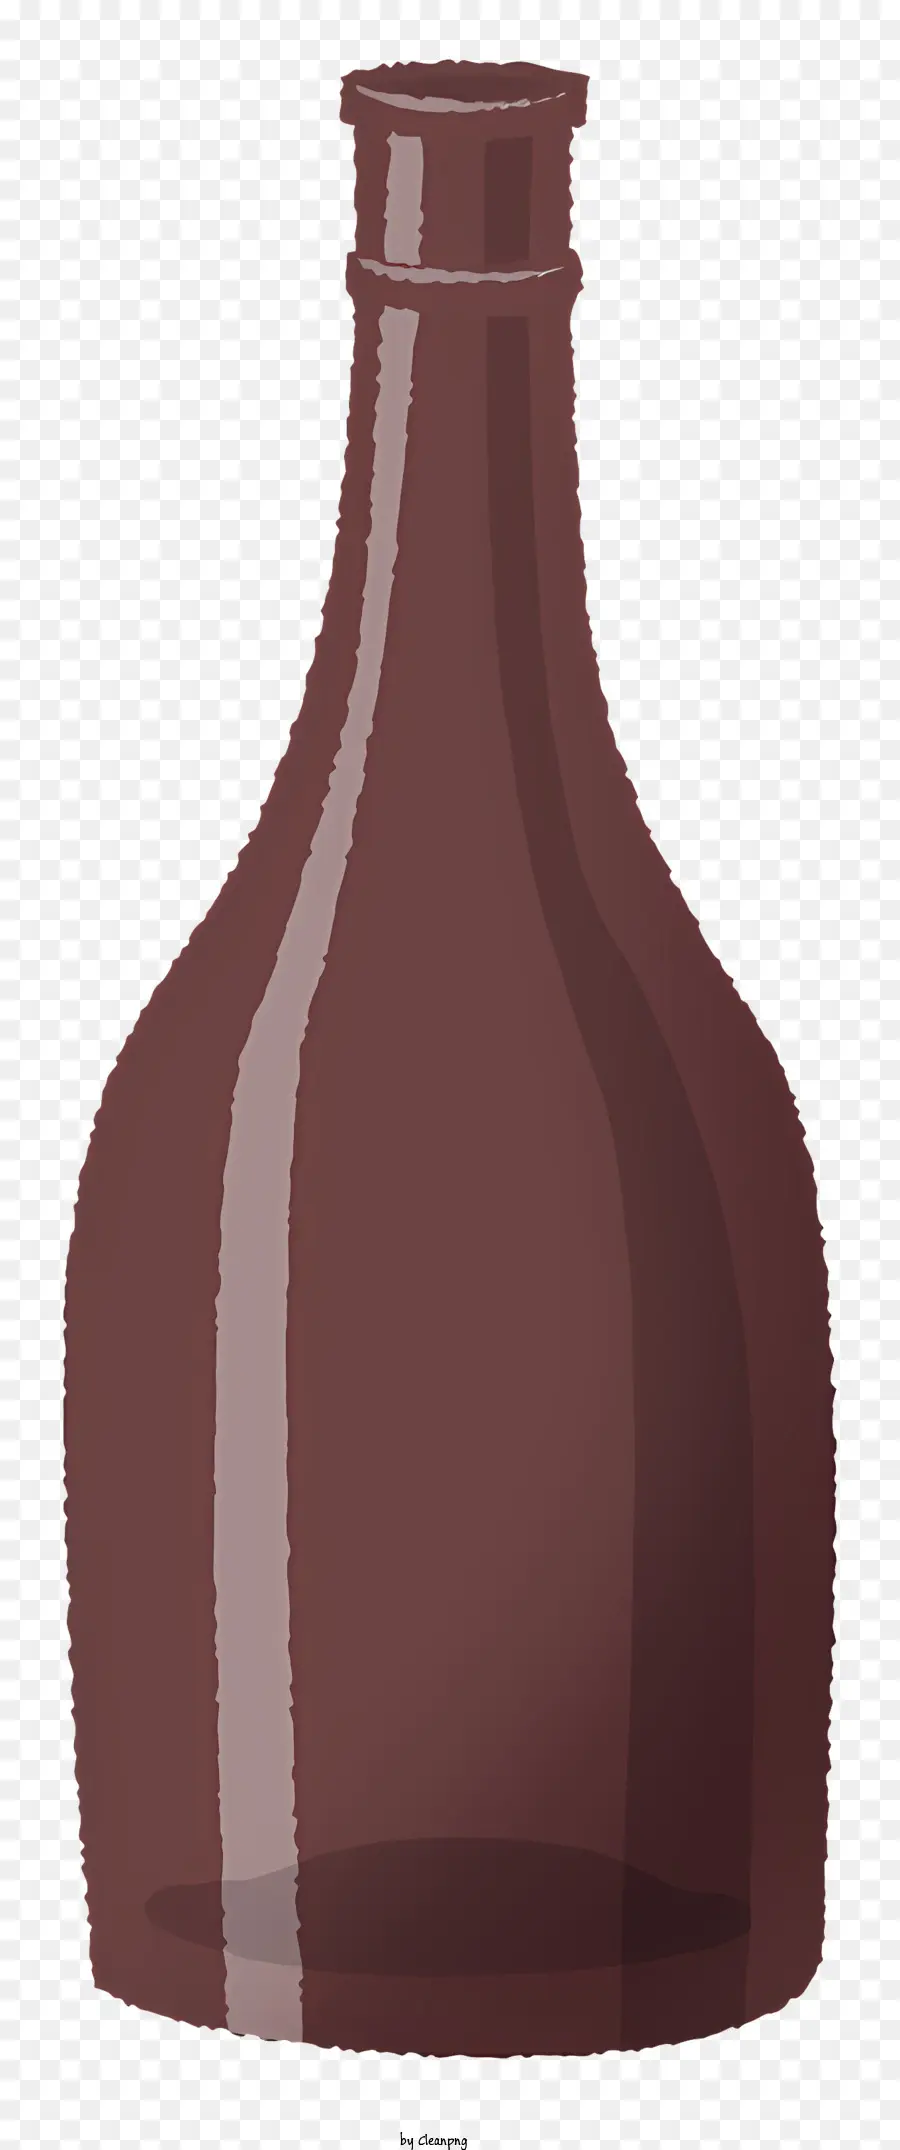 Flasche große braune Flasche Schmale Nackenflasche breites Mund Flaschen Glasflasche - Große braune Glasflasche mit klarer Flüssigkeit im Inneren